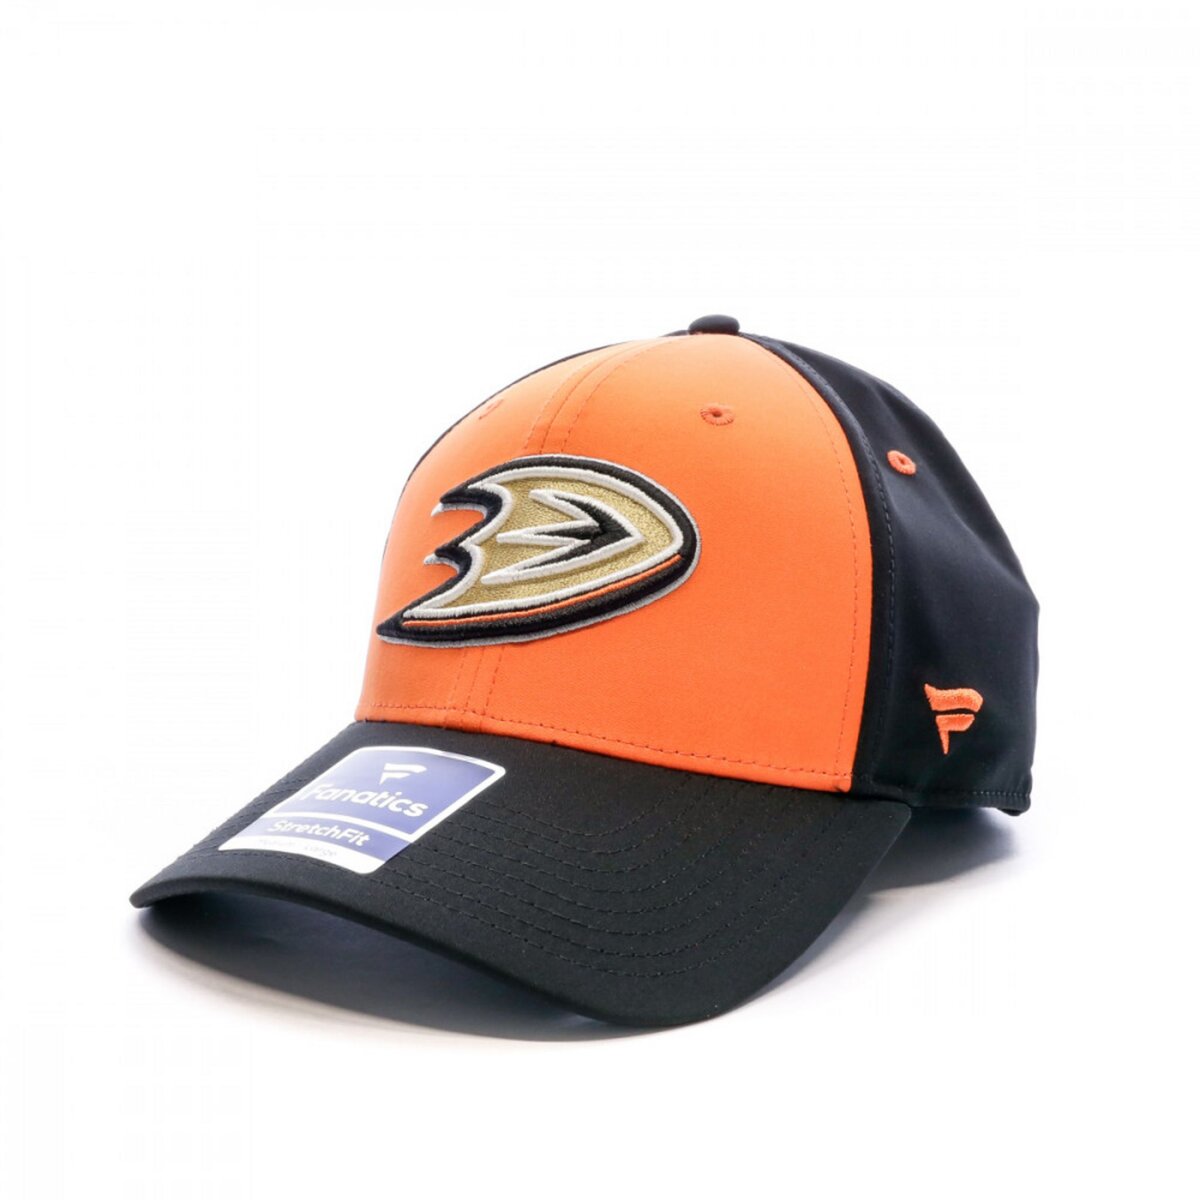  Casquette Orange/Noir Homme NHL Anaheim Ducks